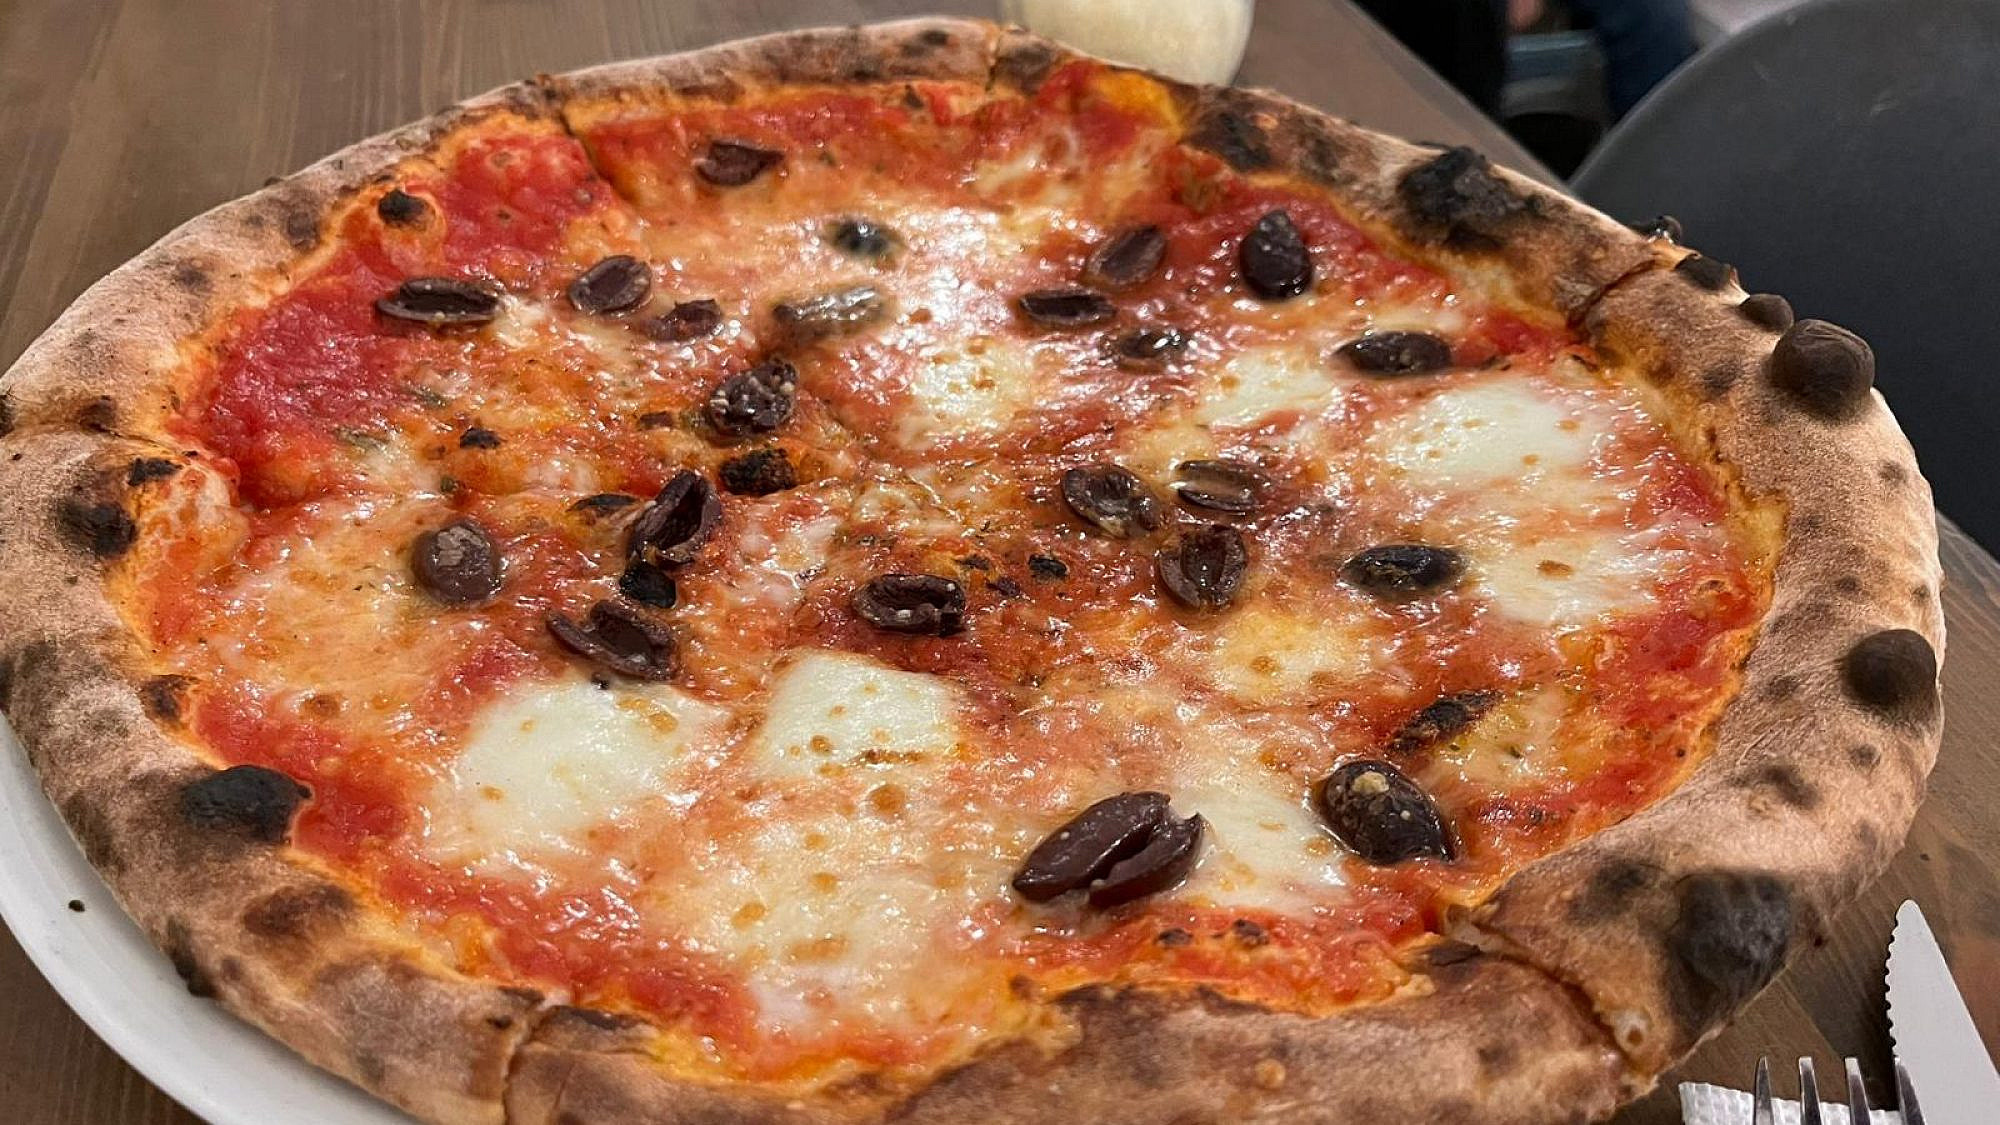 זו הפיצה של הפיצה, במסעדת הפיצה (צילום: עדי פועה וענבל קורמן, שצילמו את הפיצה)